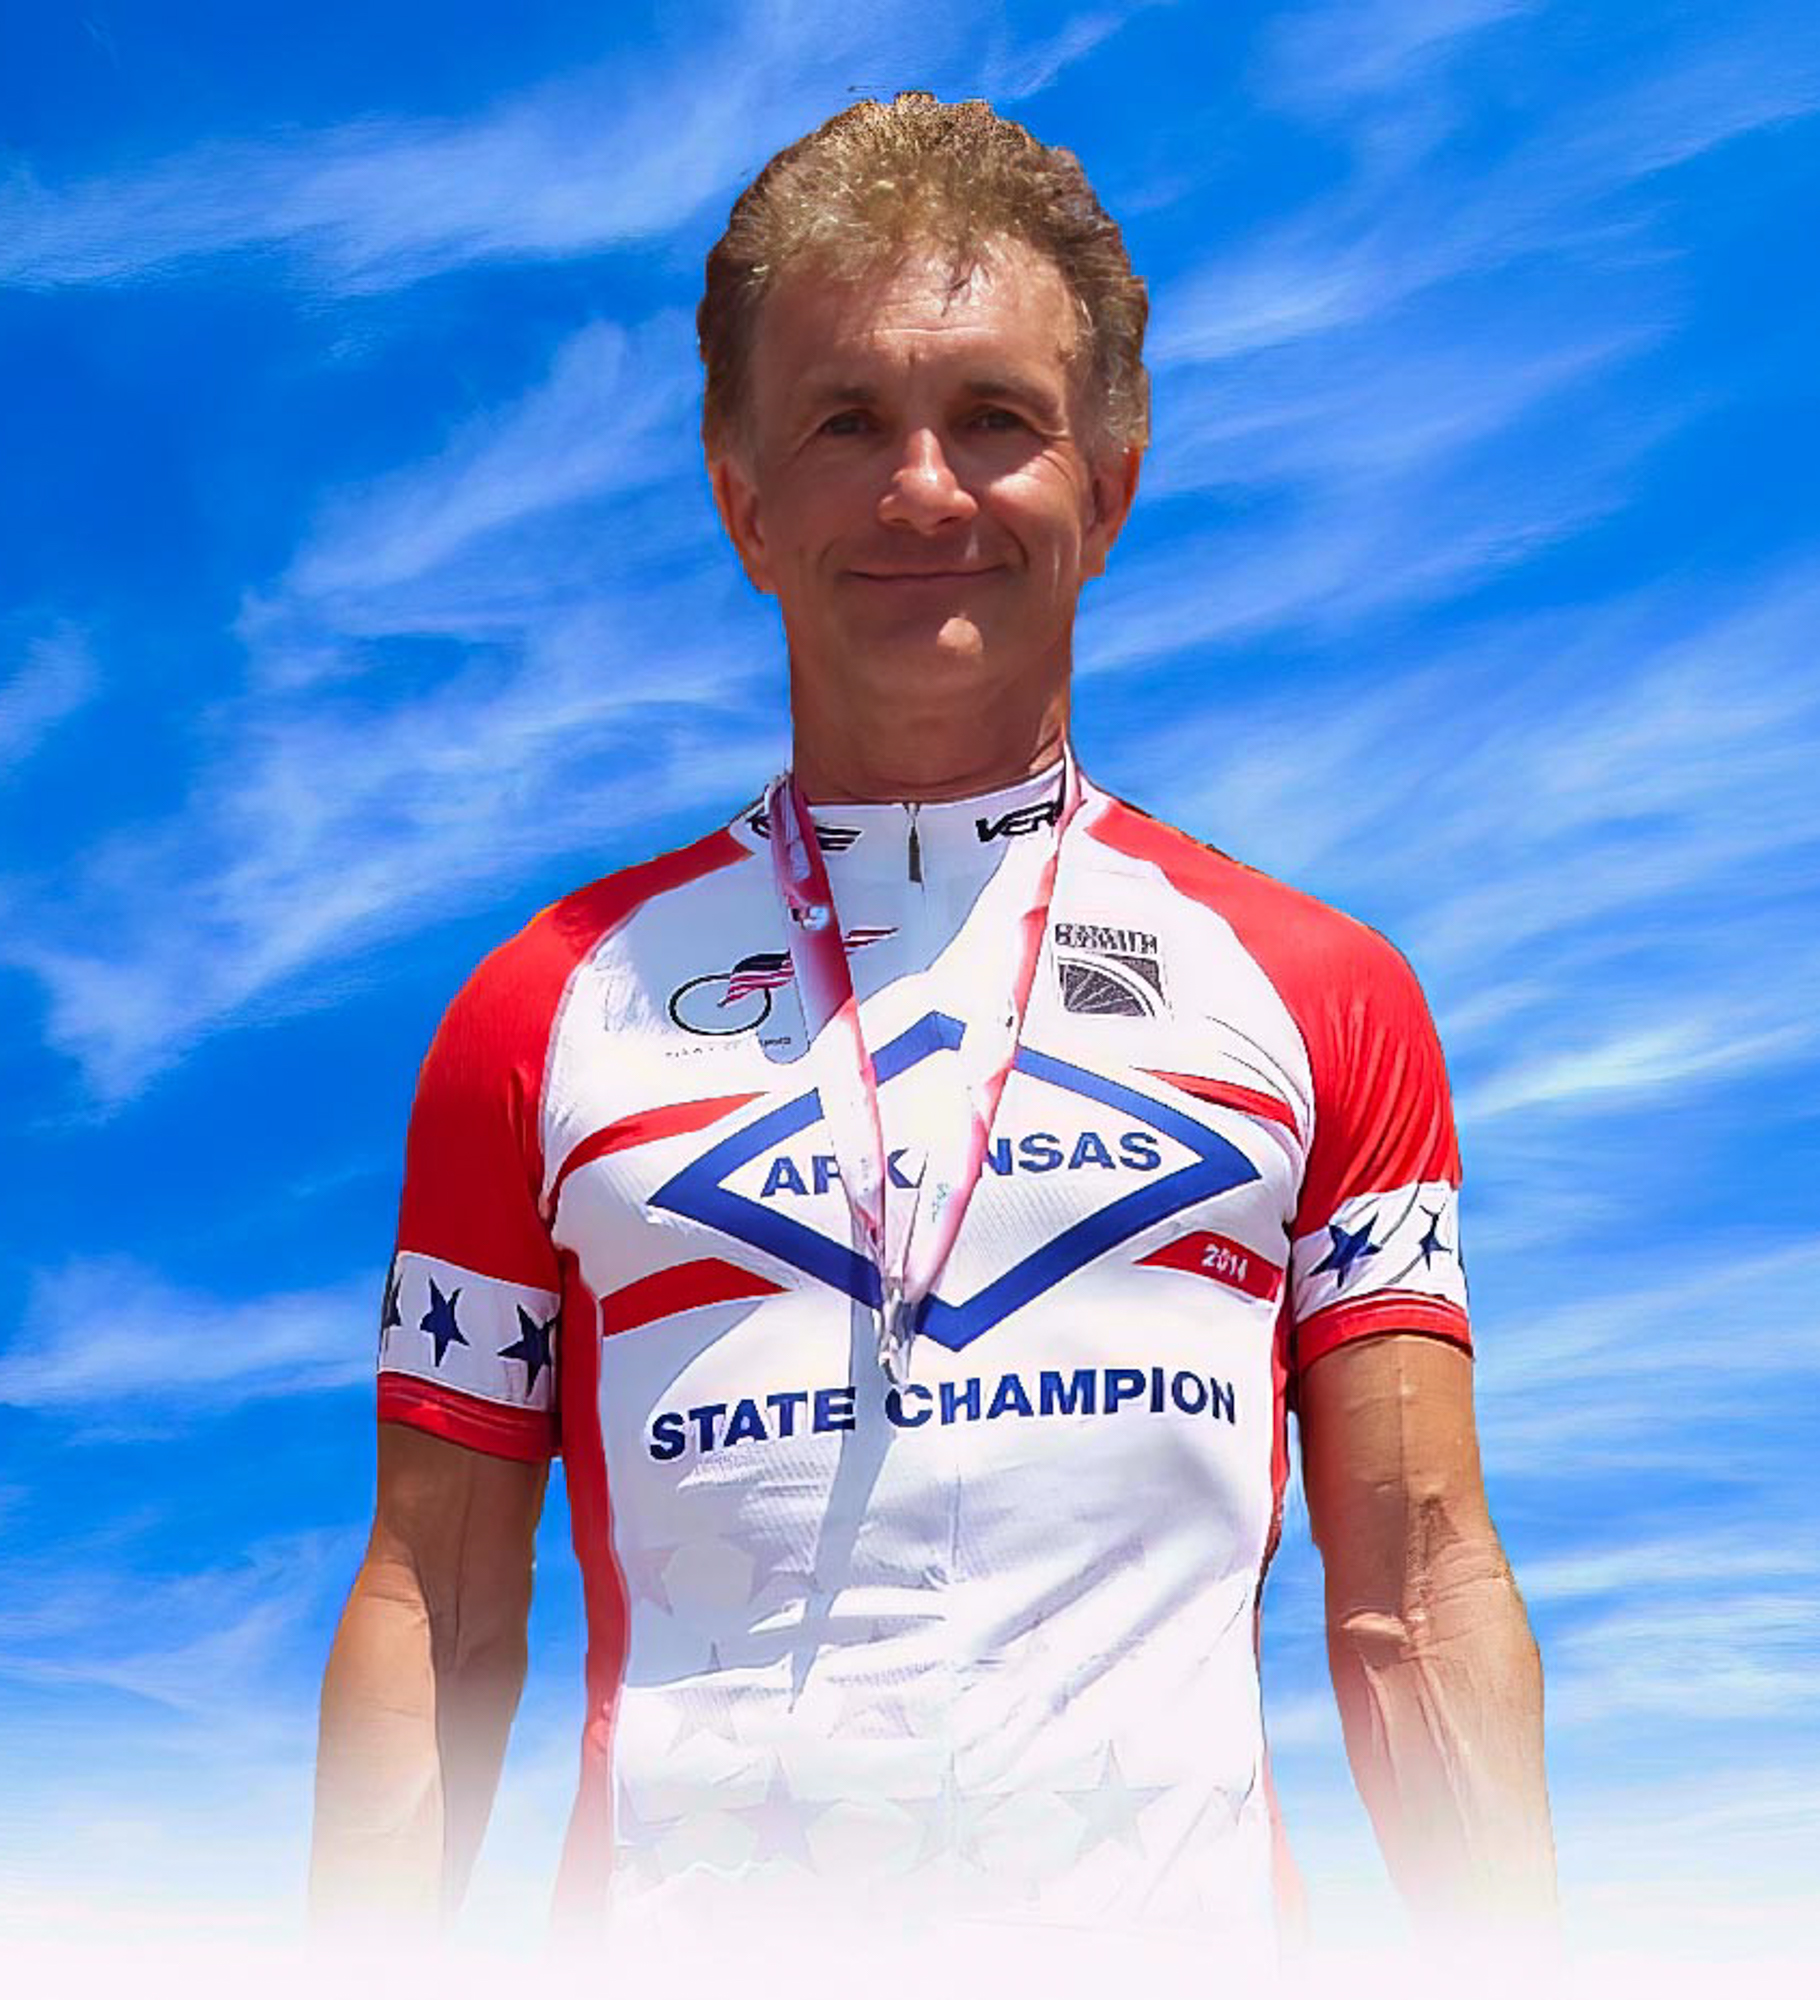 Osobní profil (portrét) našeho úspěšného amerického klienta Paula Komarka z cyklistického týmu Fayetteville Wheelmen cycling team - Mistr státu Arkansas 2014 a 2015 v silničním závodu